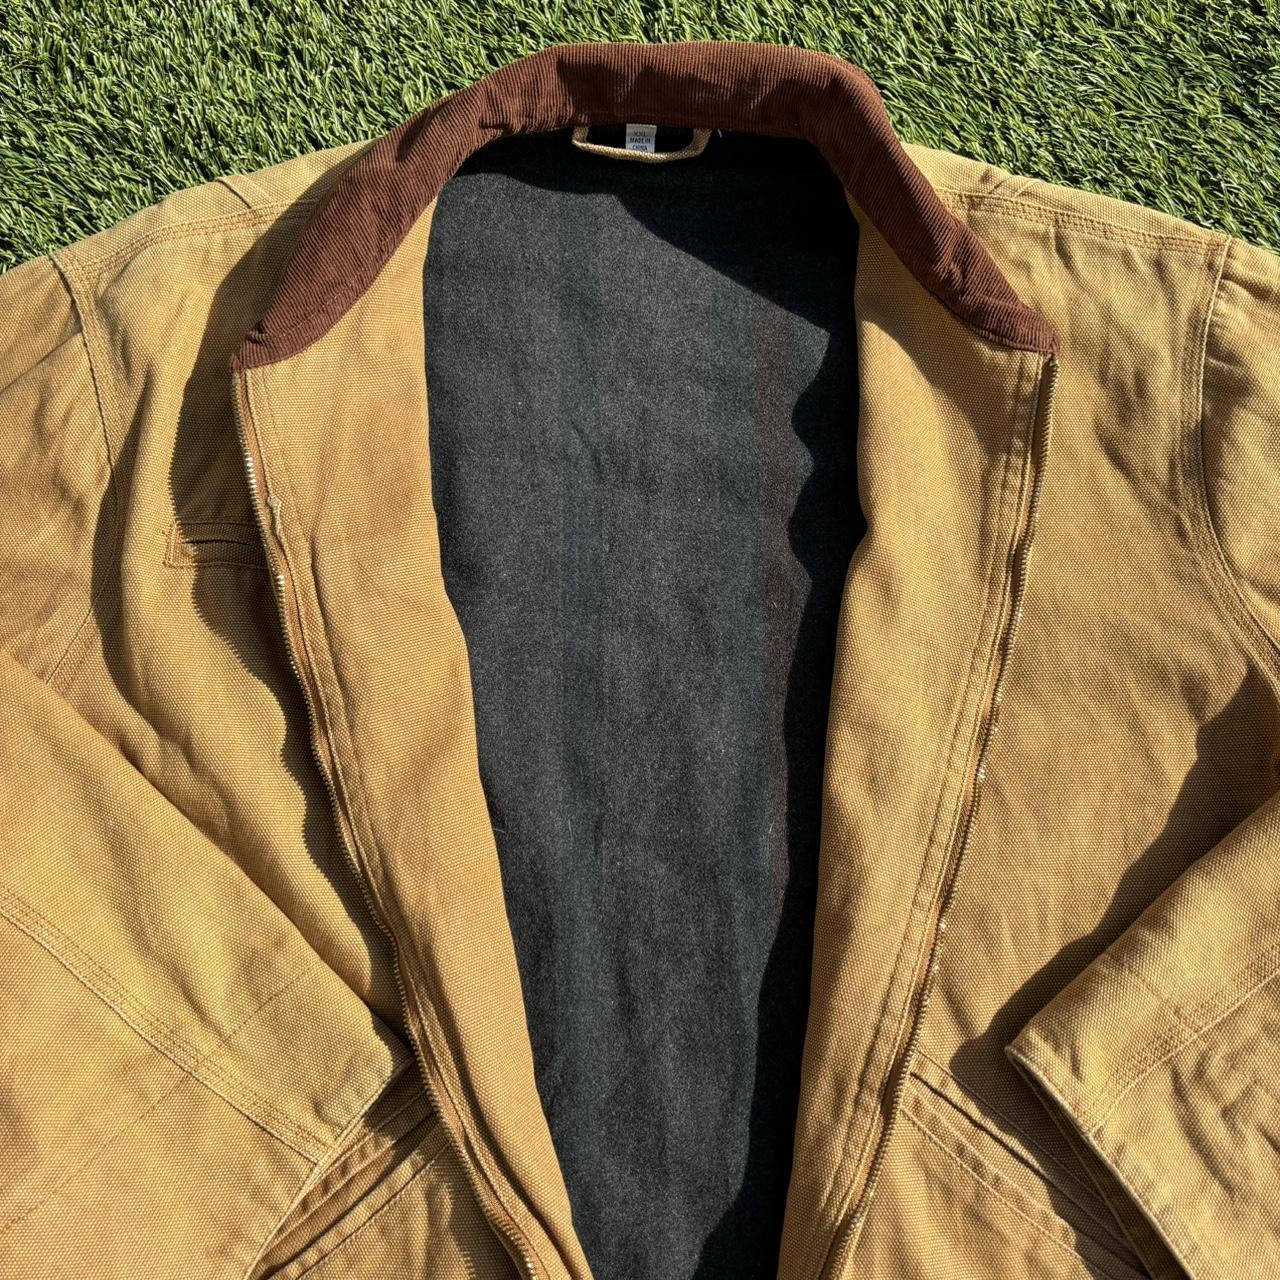 Faded vintage detroit carhartt style jacket Great... - Depop